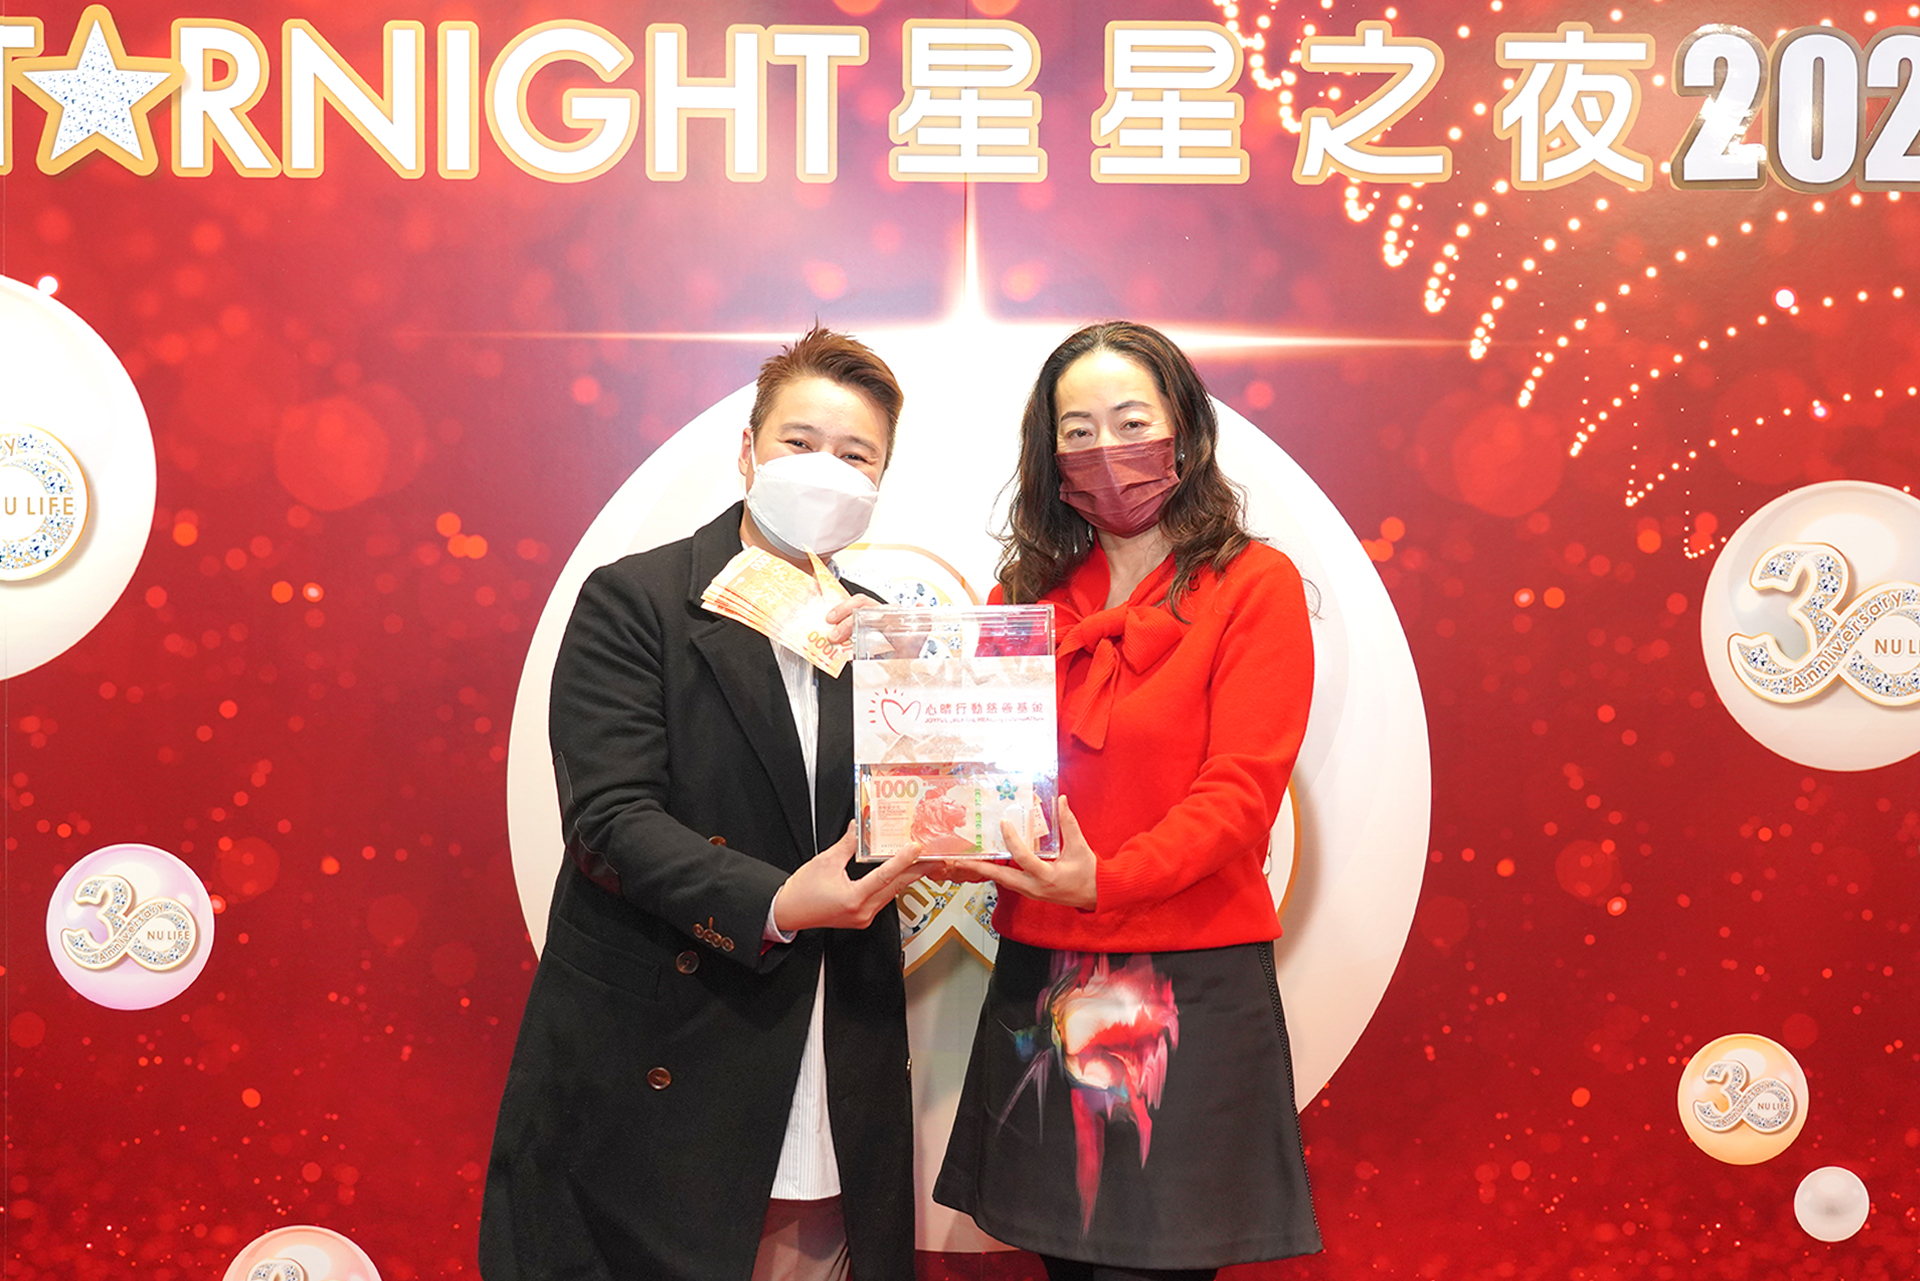 恭賀Man Lam從星級百萬富翁遊戲贏取HK$10,000獎金並與公司合共捐助HK$4000予「心晴行動慈善基金」